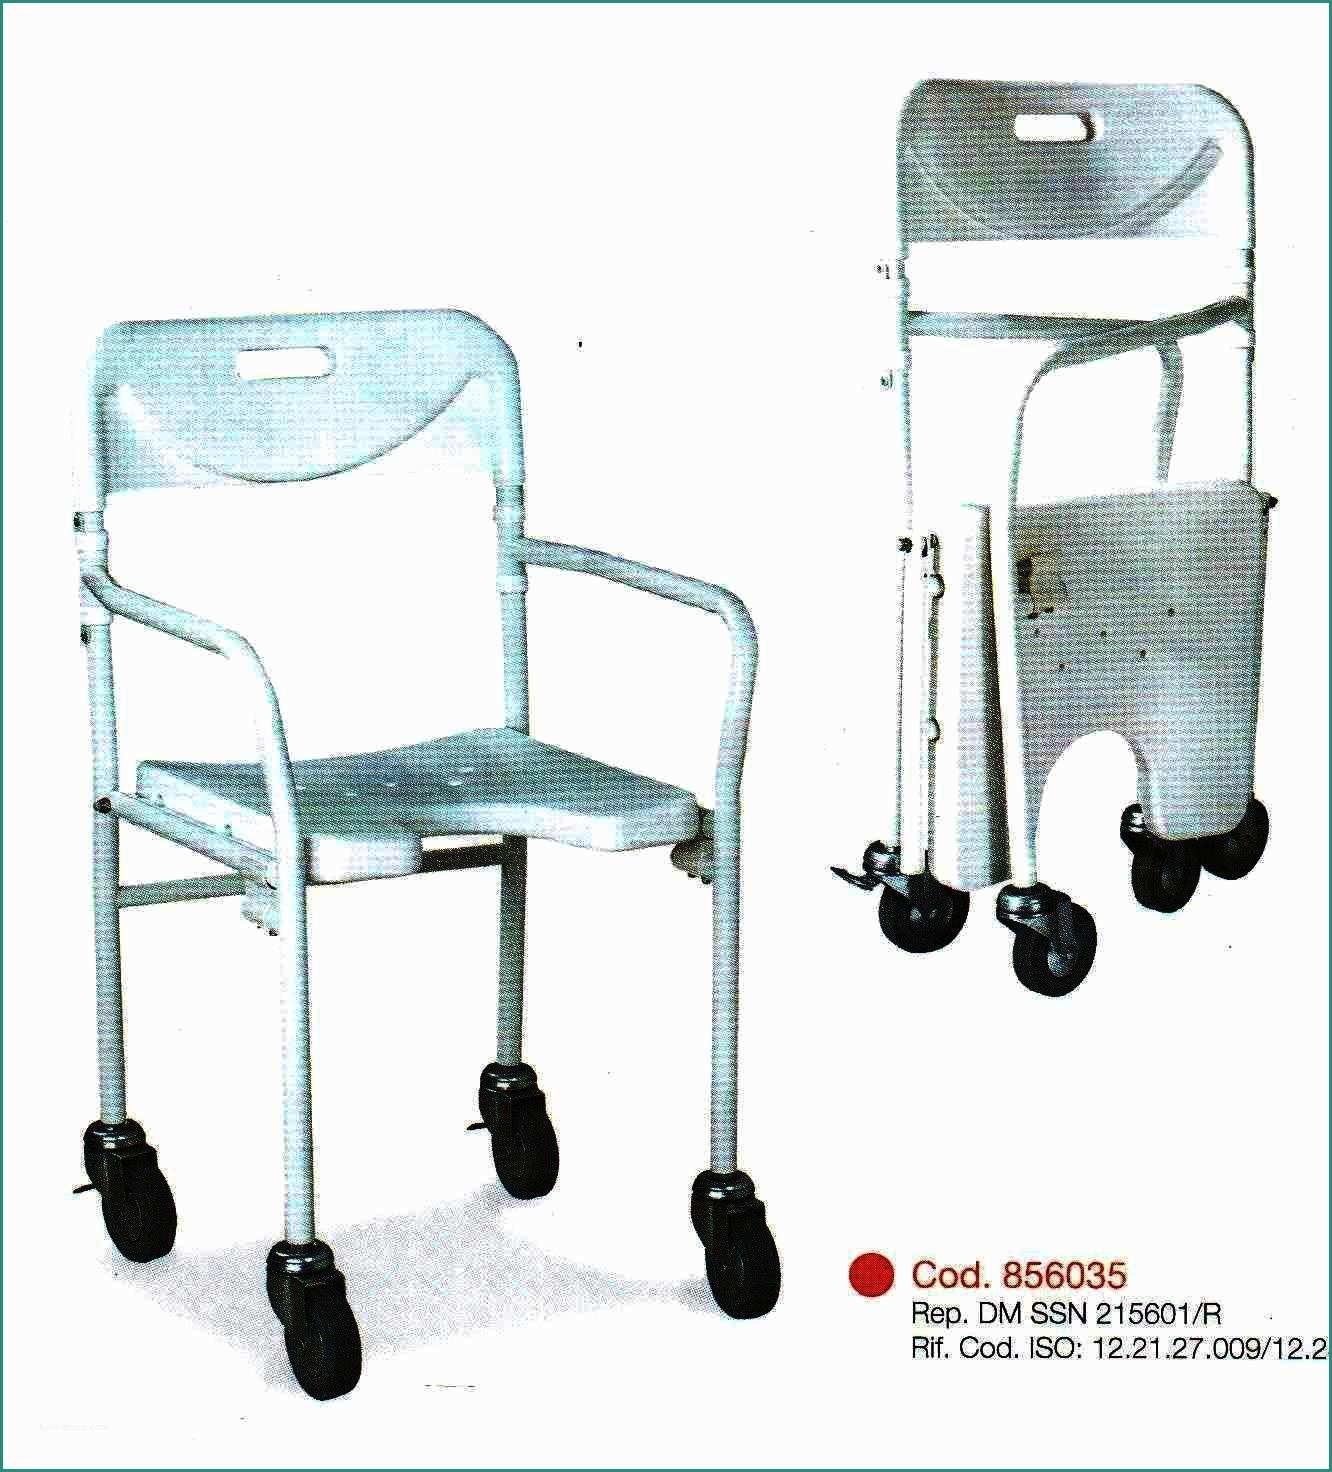 Carrozzina Pieghevole Per Disabili E Sedia Da Doccia Mod Pieghevole Vendita Online Su Prodotti ortopedici